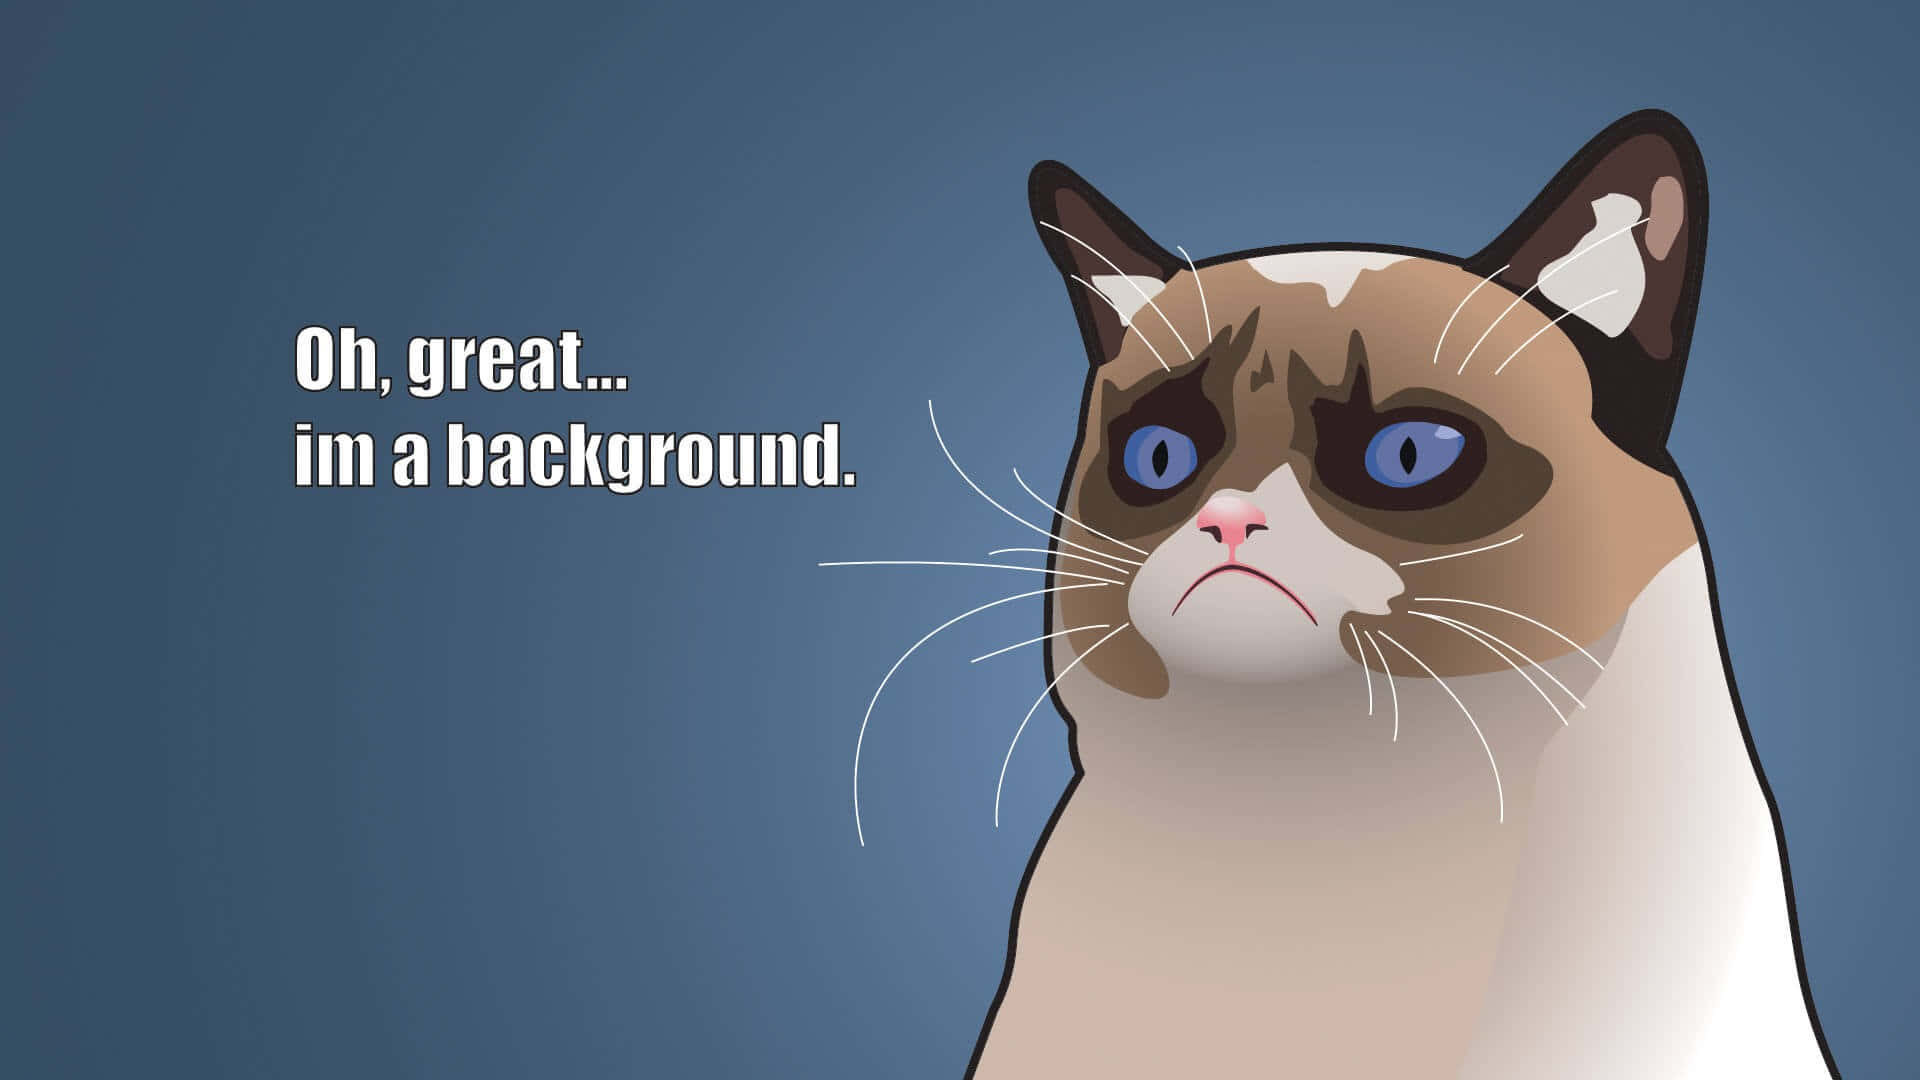 Grumpy Cat Wallpaper, Grumpy Cat Wallpaper, Grumpy Cat Wallpaper, Grumpy Cat Wallpaper, Grumpy